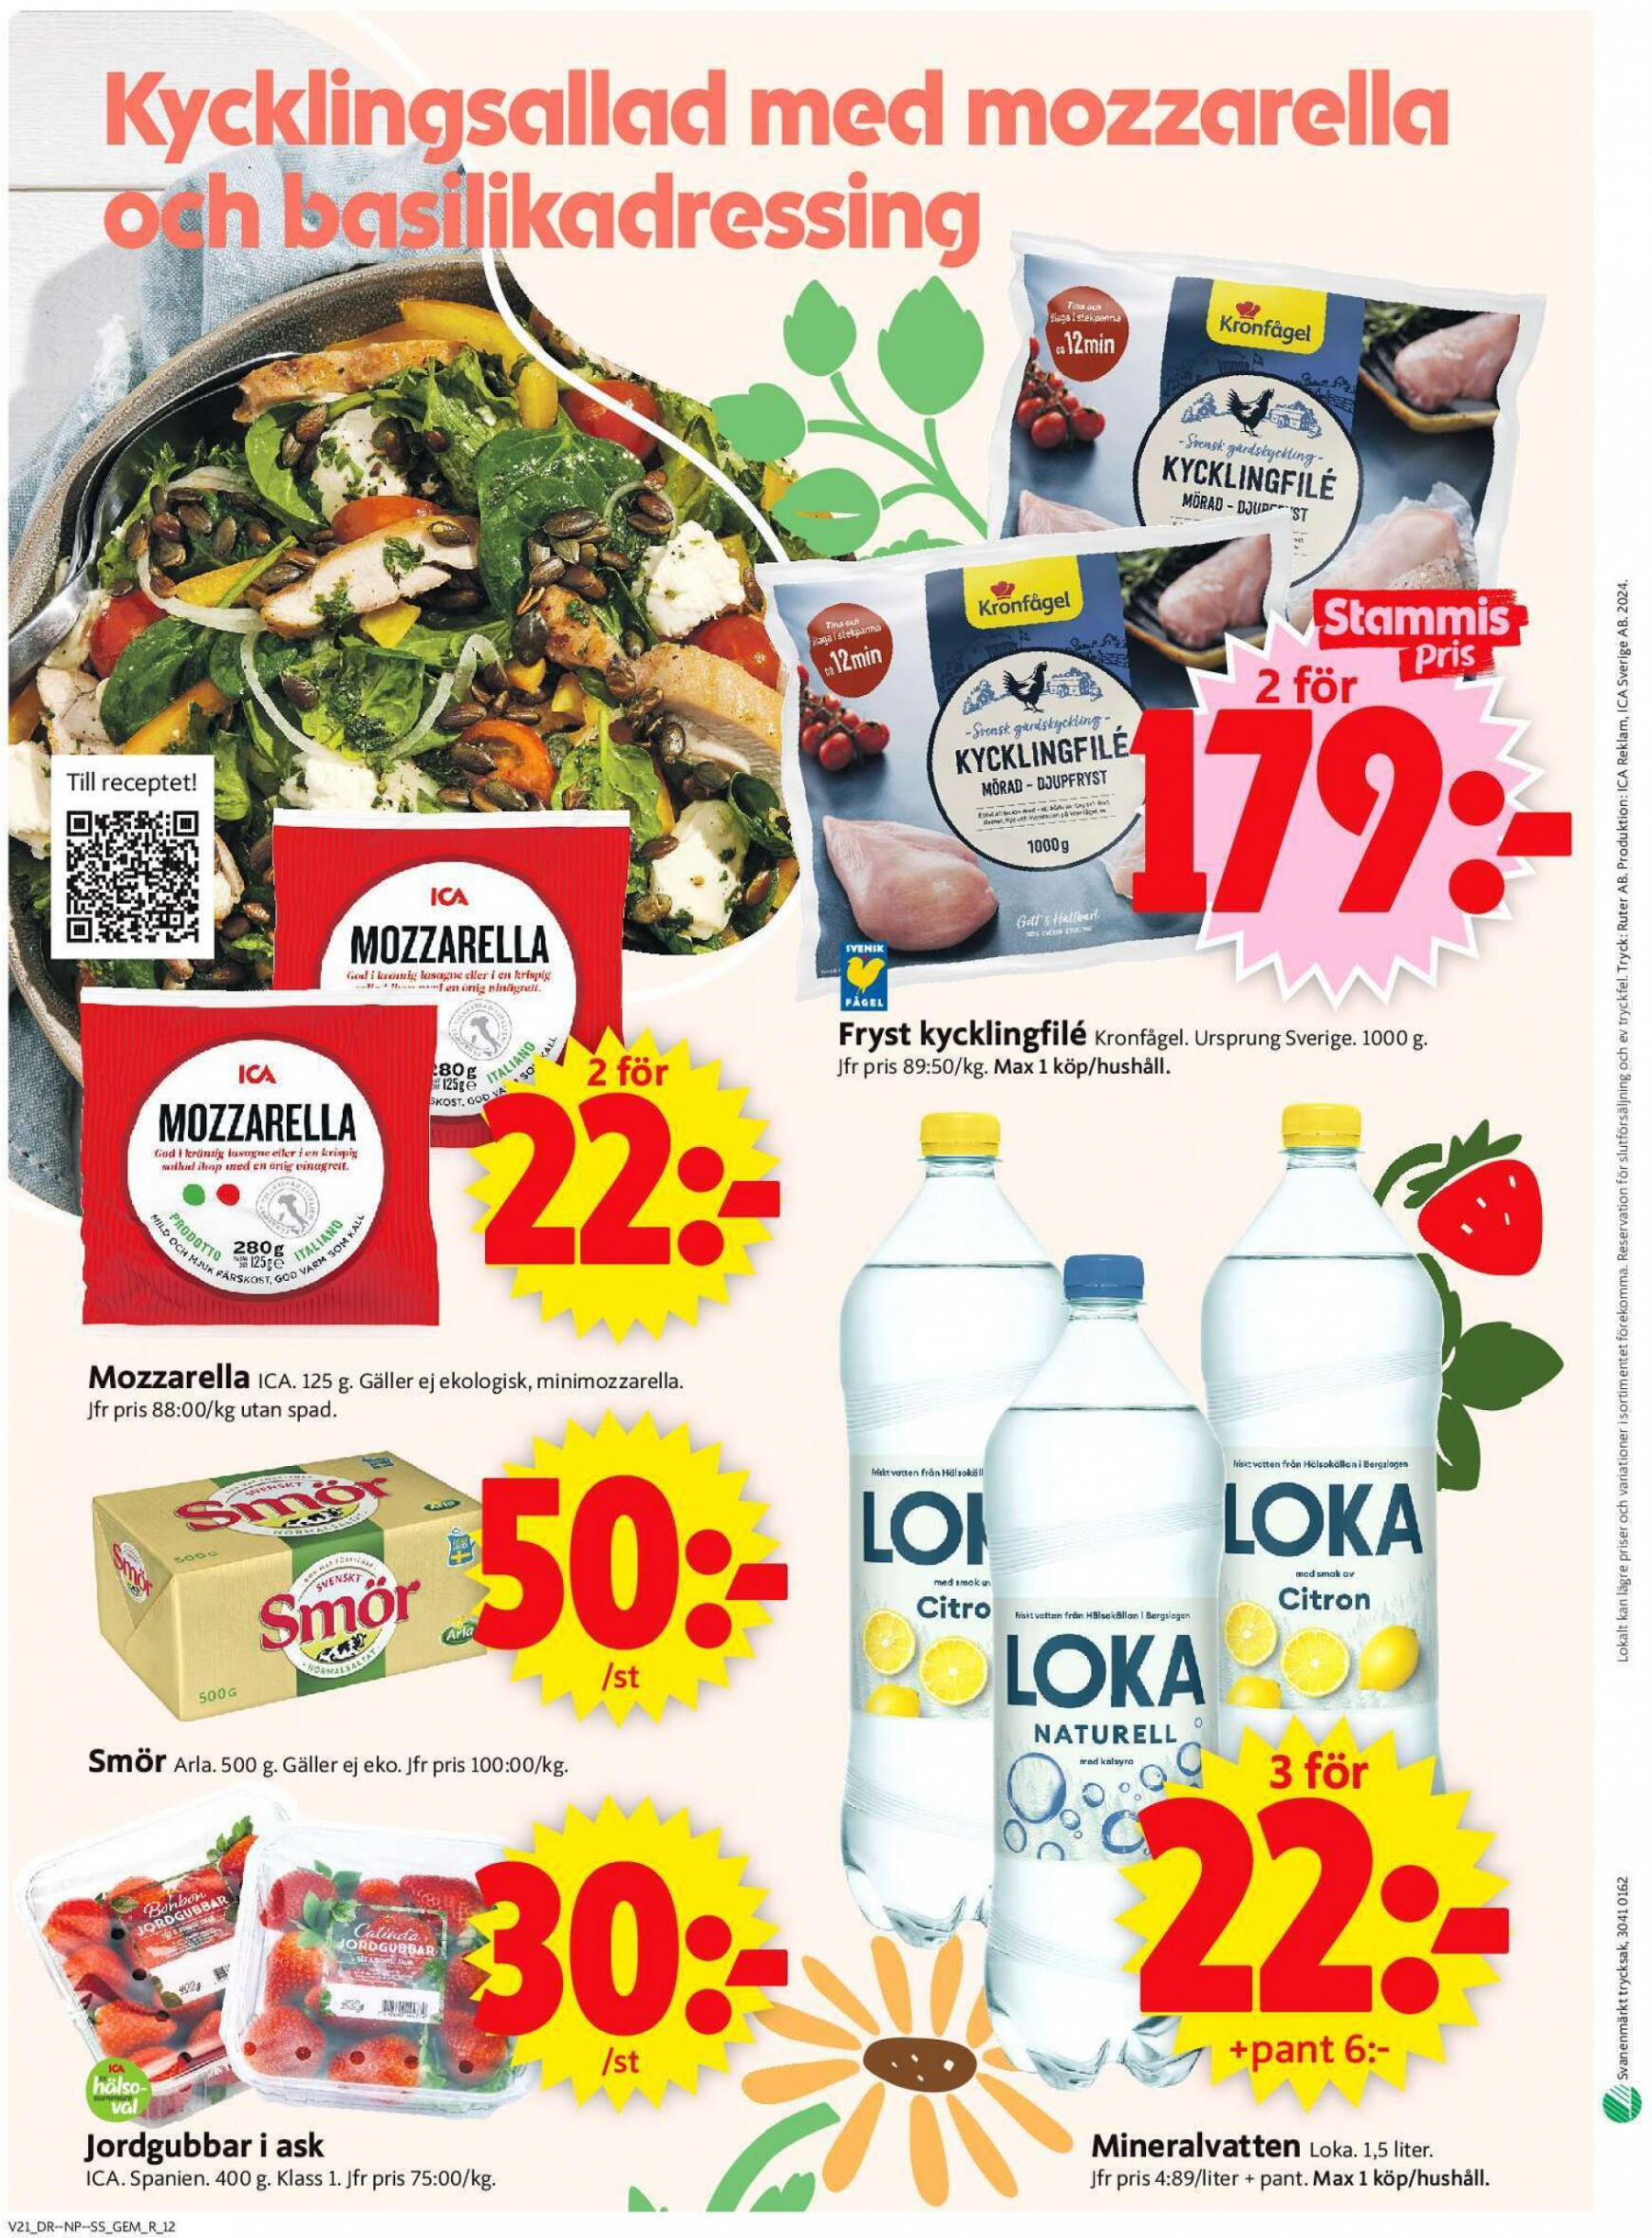 ica-supermarket - Flyer ICA Supermarket current 20.05. - 26.05. - page: 14